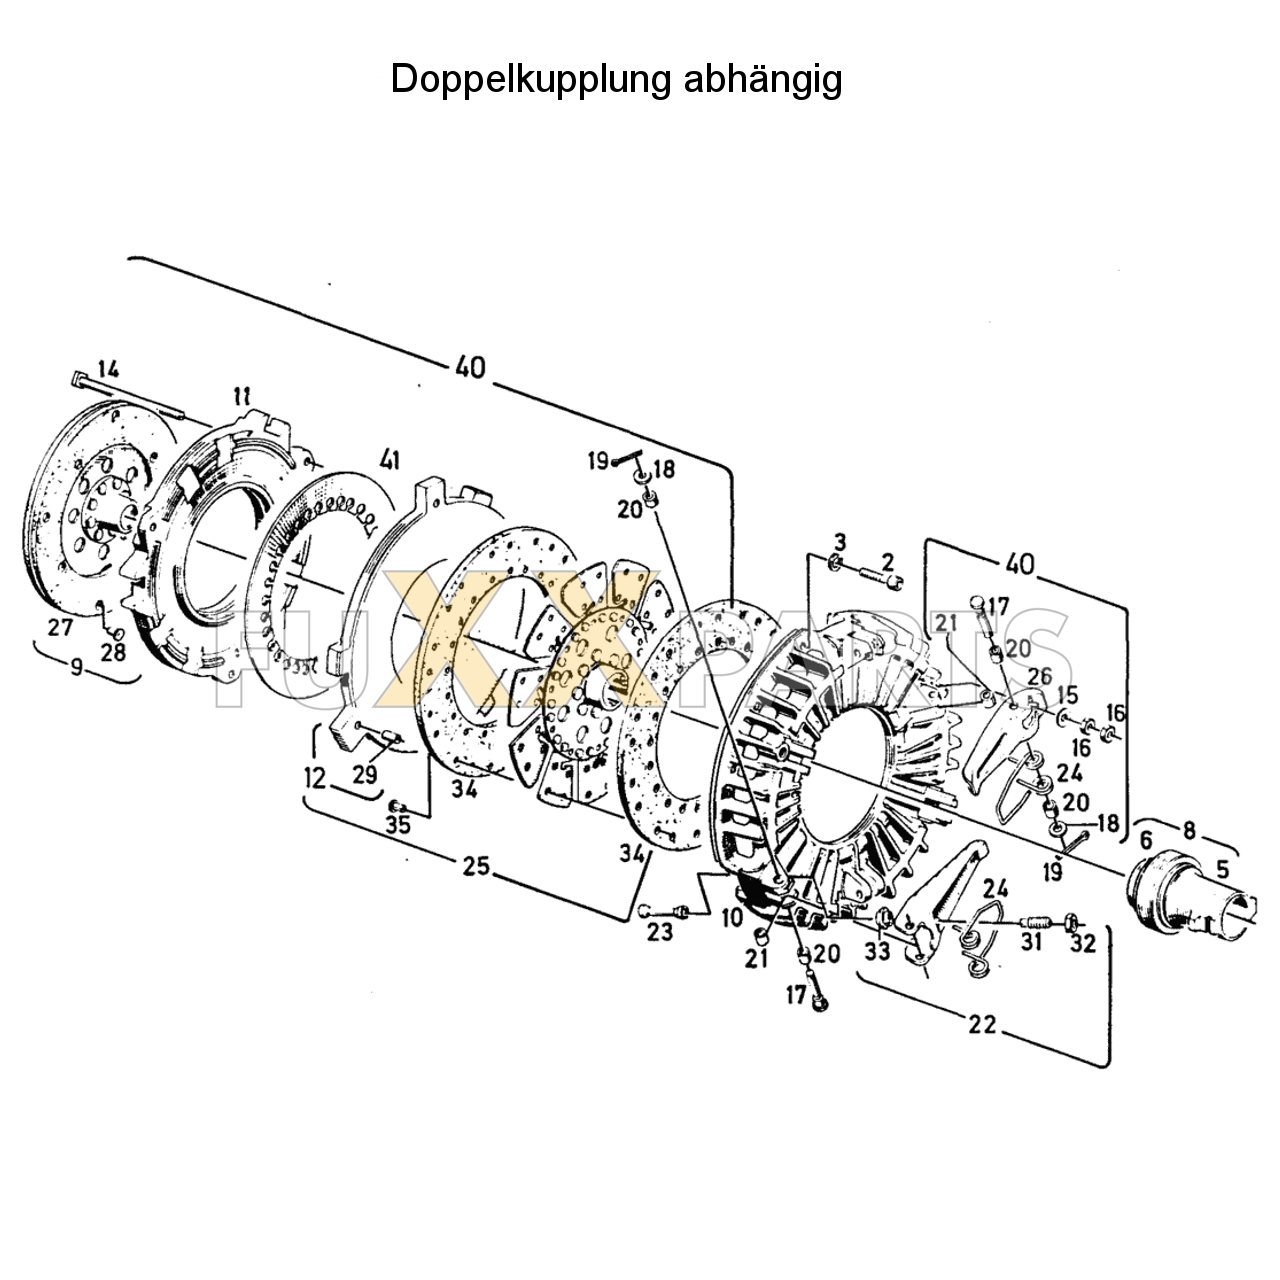 D 6807 Doppelkupplung abhängig